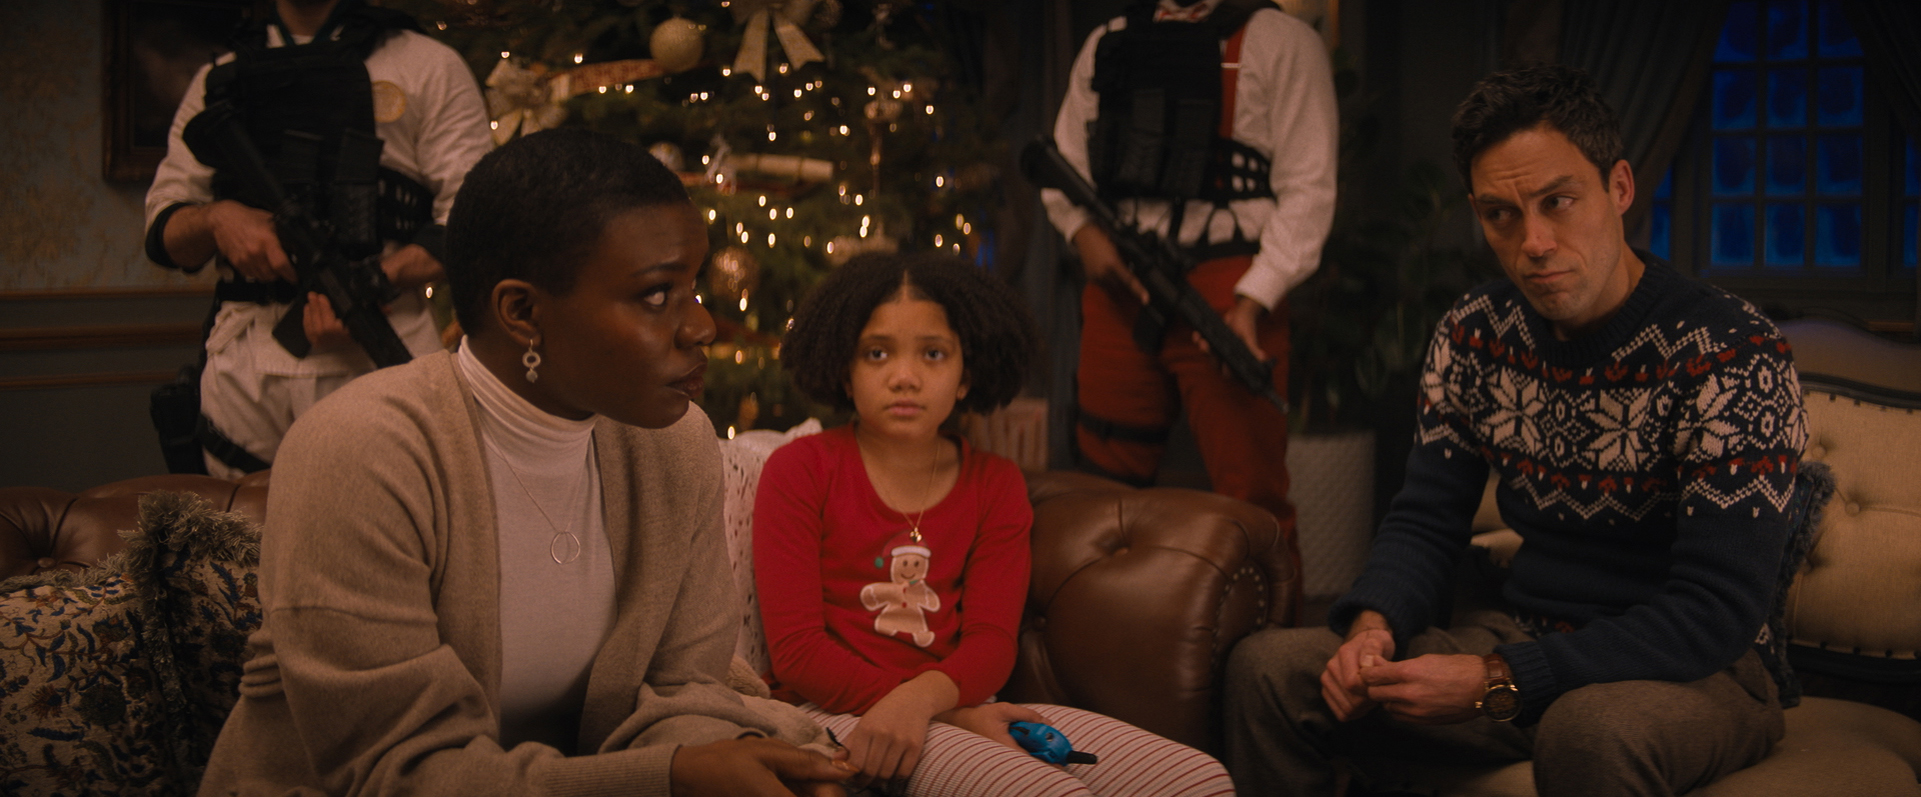 Alexis Louder als Linda Matthews sitzt ganz links auf dem Sofa und schaut besorgt zu ihrem Partner Jason Lightstone gespielt von Alex Hassell ganz rechts. Dieser schaut besorgt zurück, während Tochter Trudy Lightstone (Leah Brady)bin der Mitte, ebenfalls besorgt zu ihrer Mutter blickt. Hinter den dreien stehen zwei Leute mit Maschinengewehren vor dem Weihnachtsbaum im Hintergrund. 